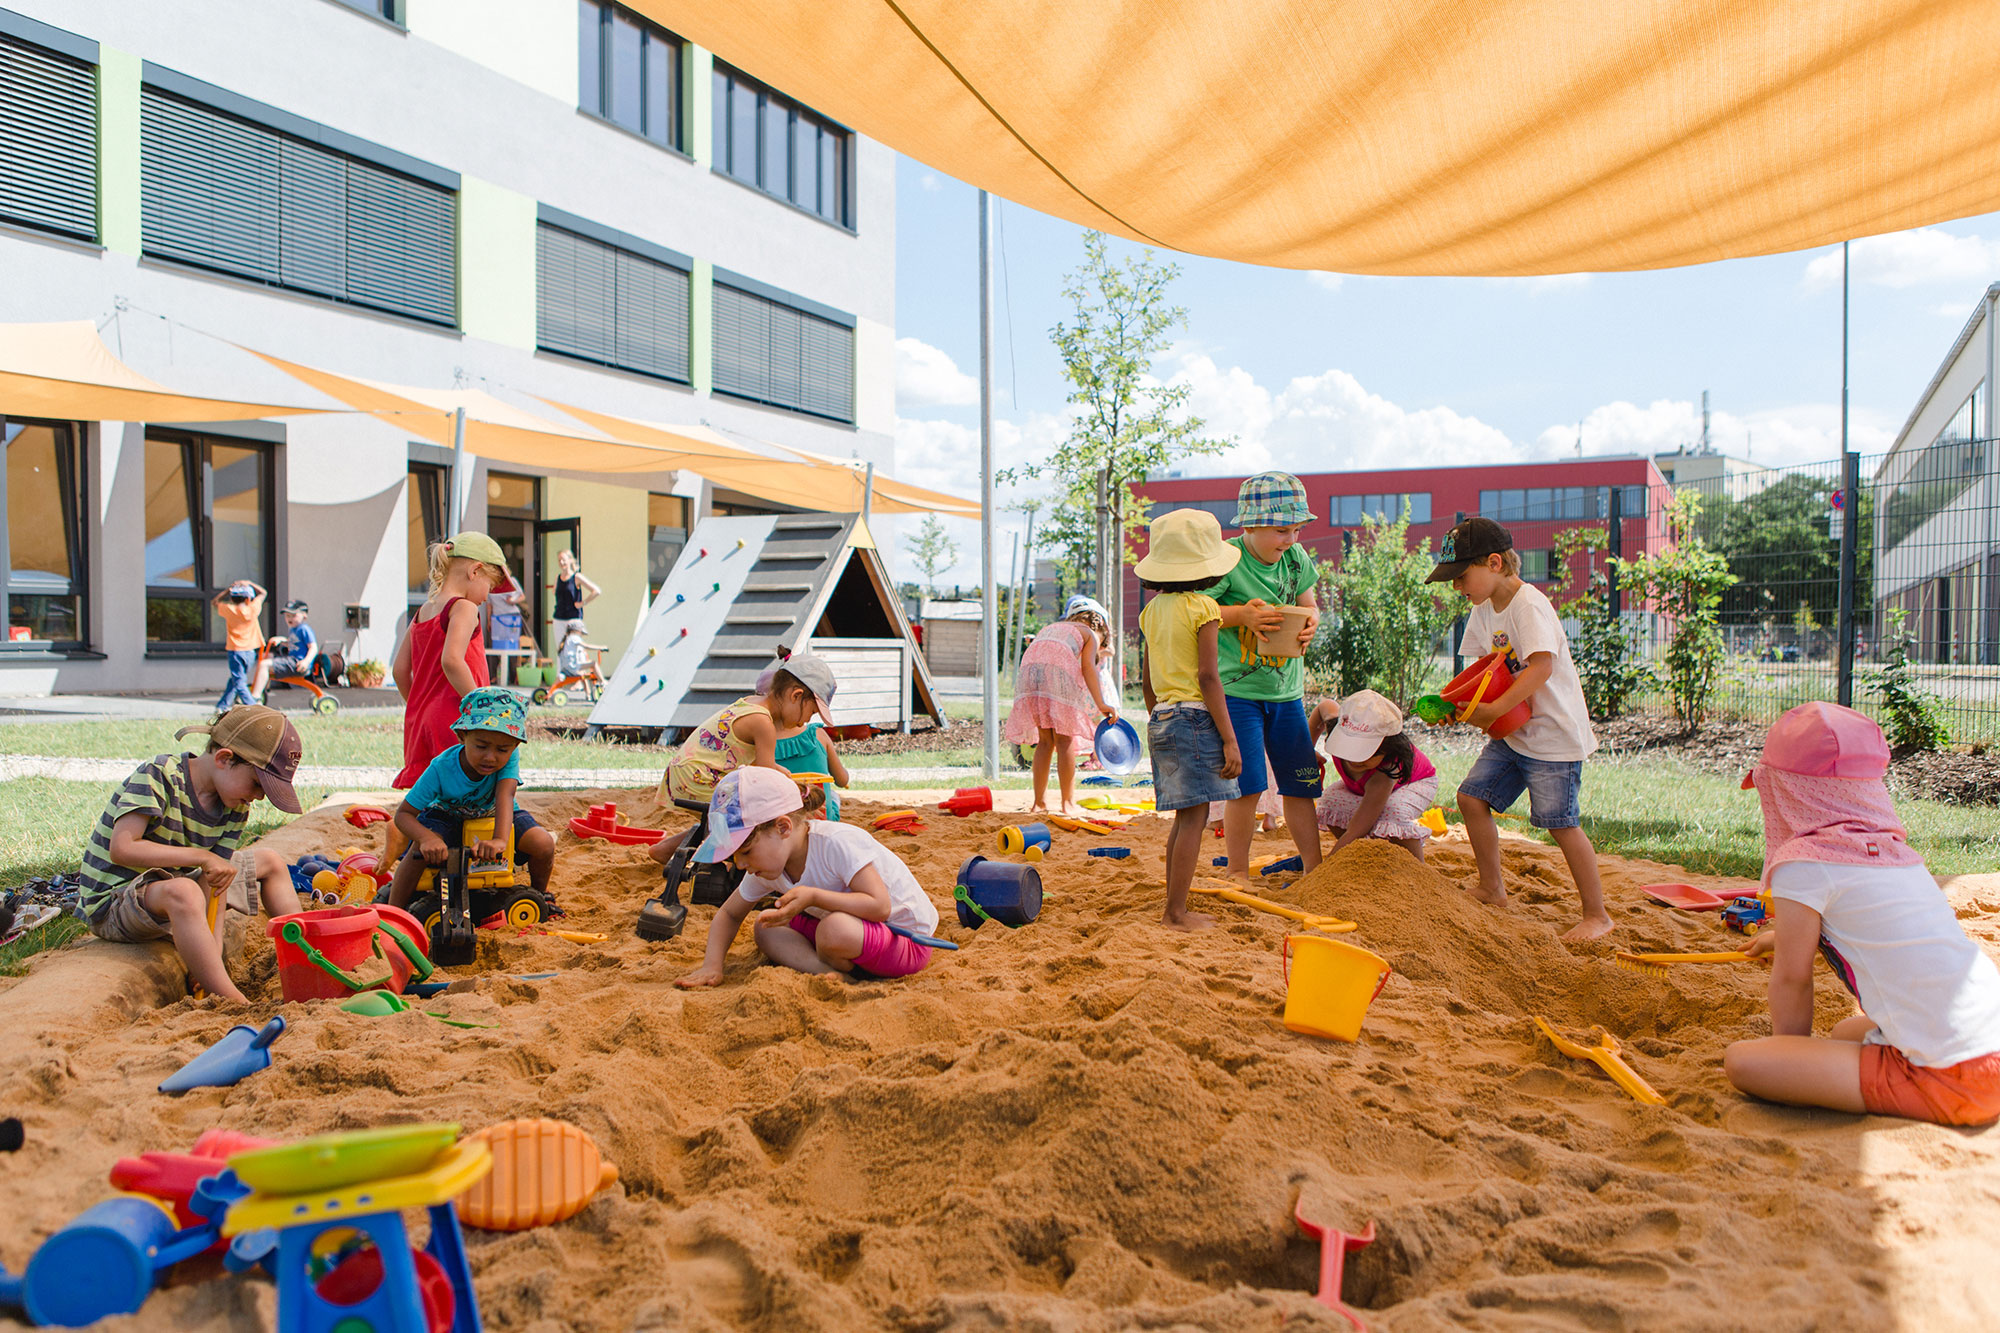 Eine Gruppe von Kindergarten-Kindern spielt im Sandkasten mit Sandspielzeug. Der Sandkasten wird durch ein gelbes Sonnensegel beschattet.